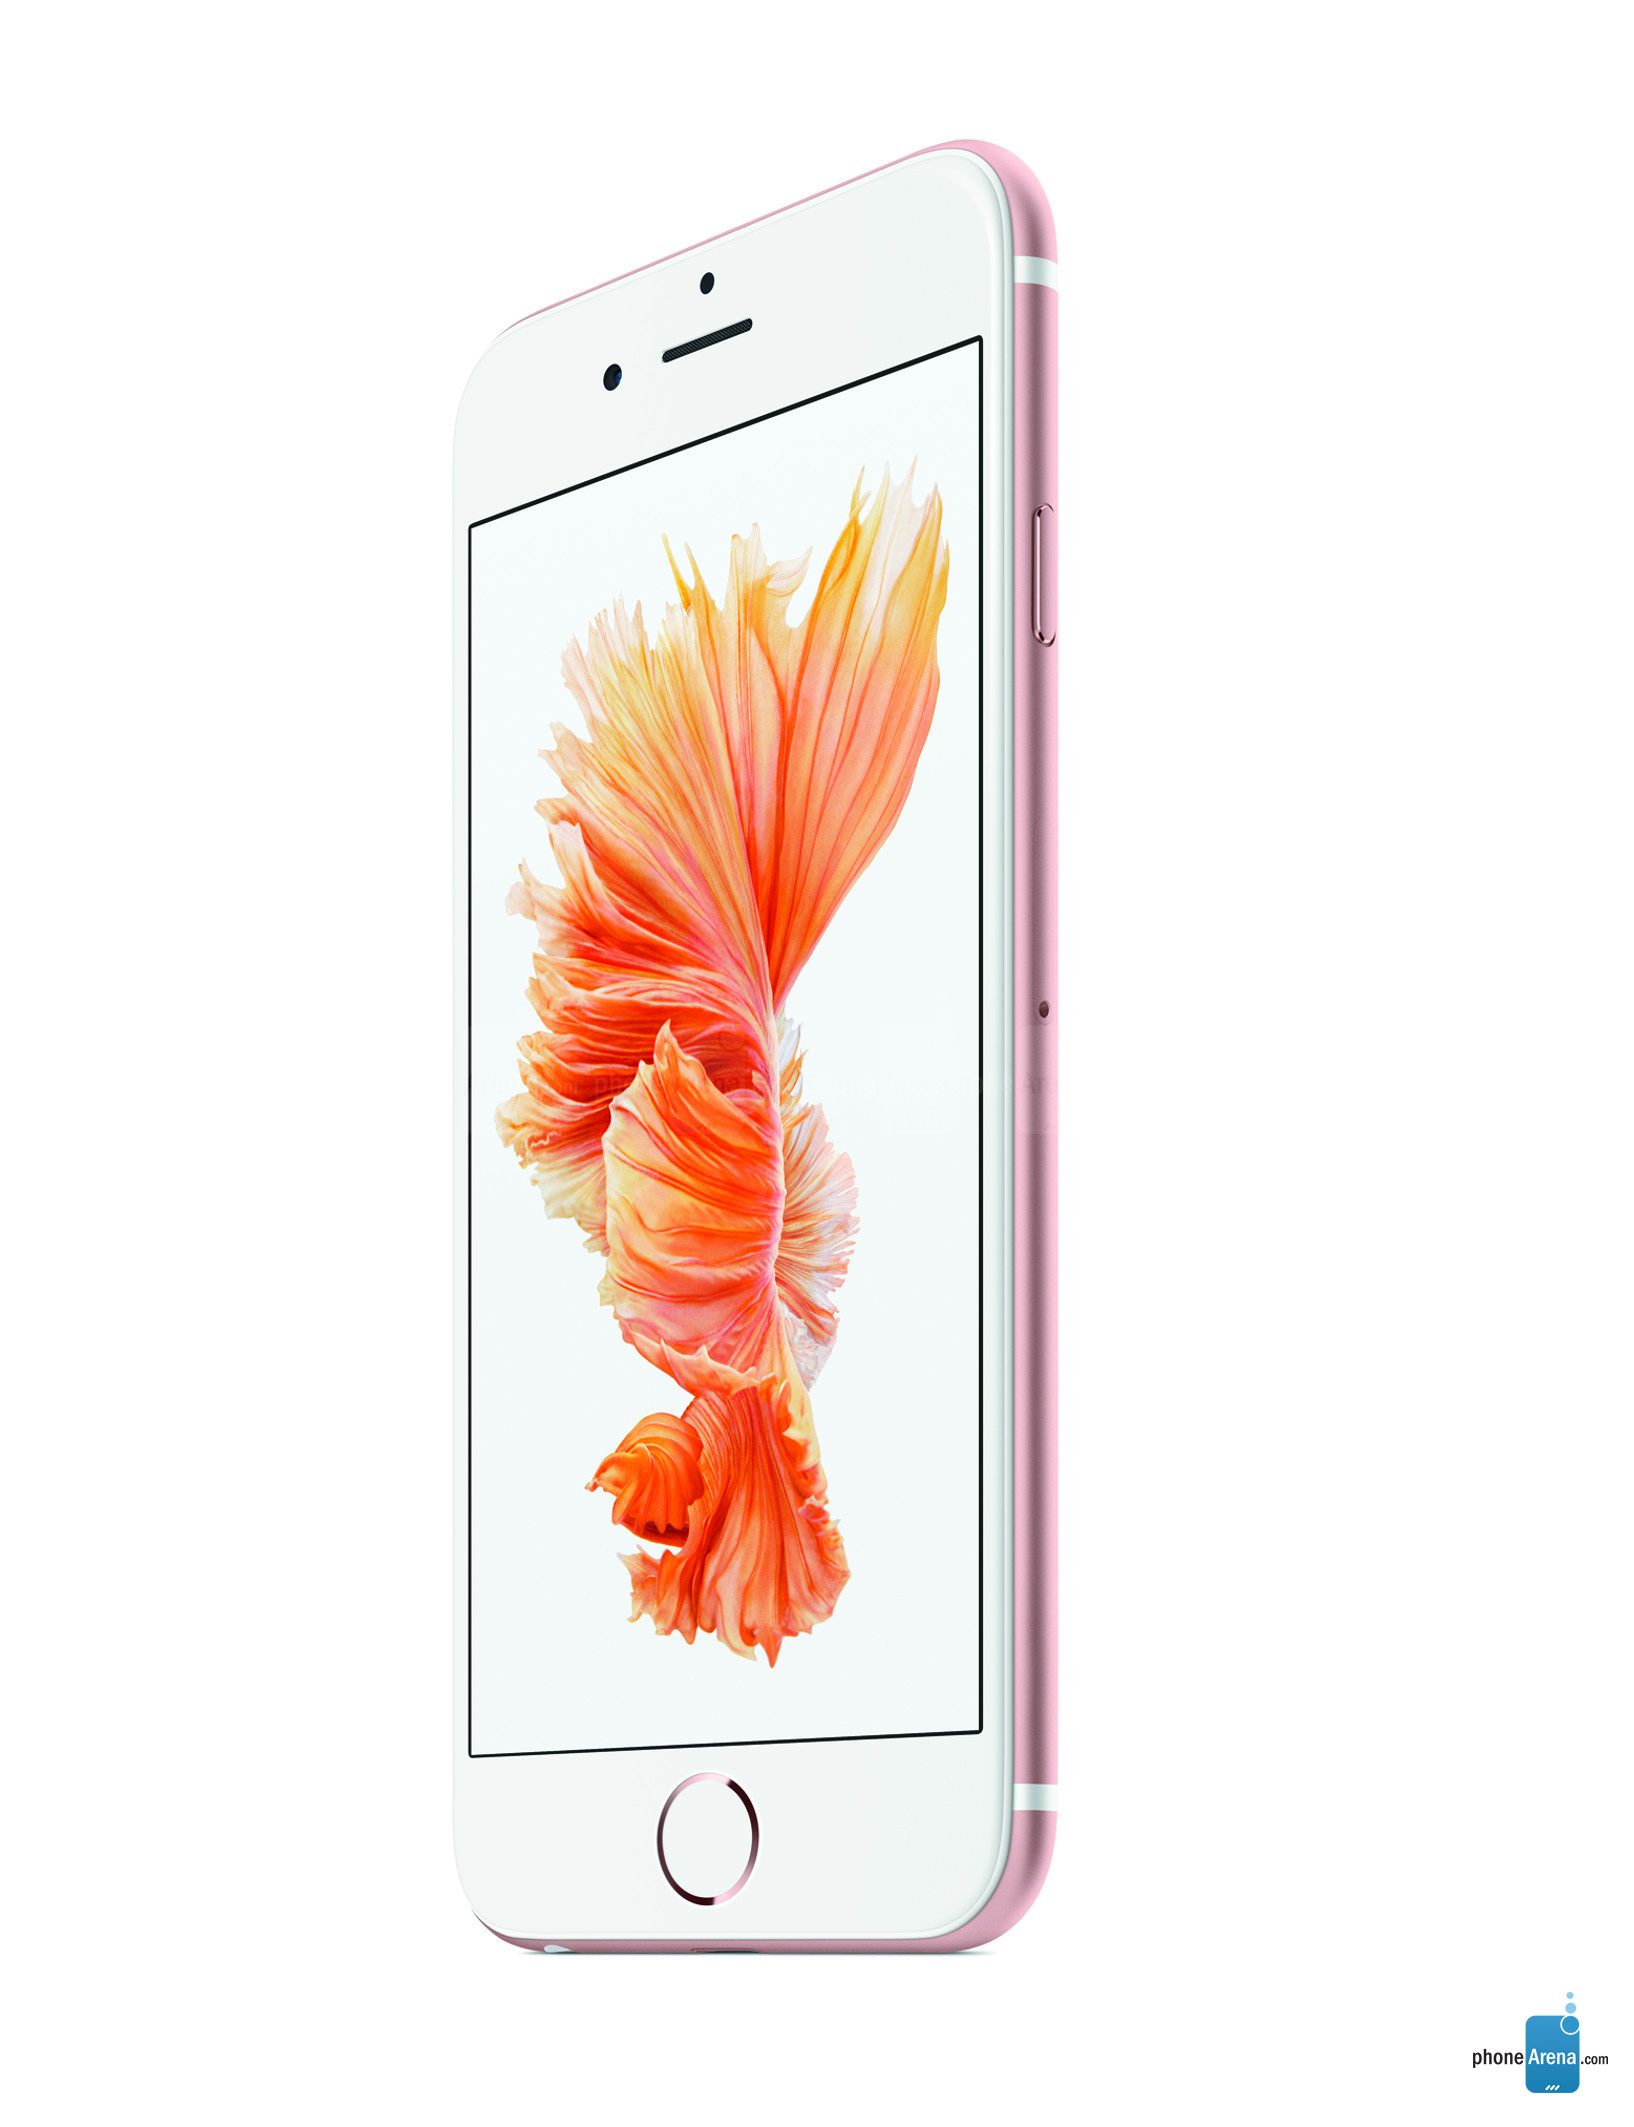 Indahnya penampilan iPhone 6S dengan warna baru